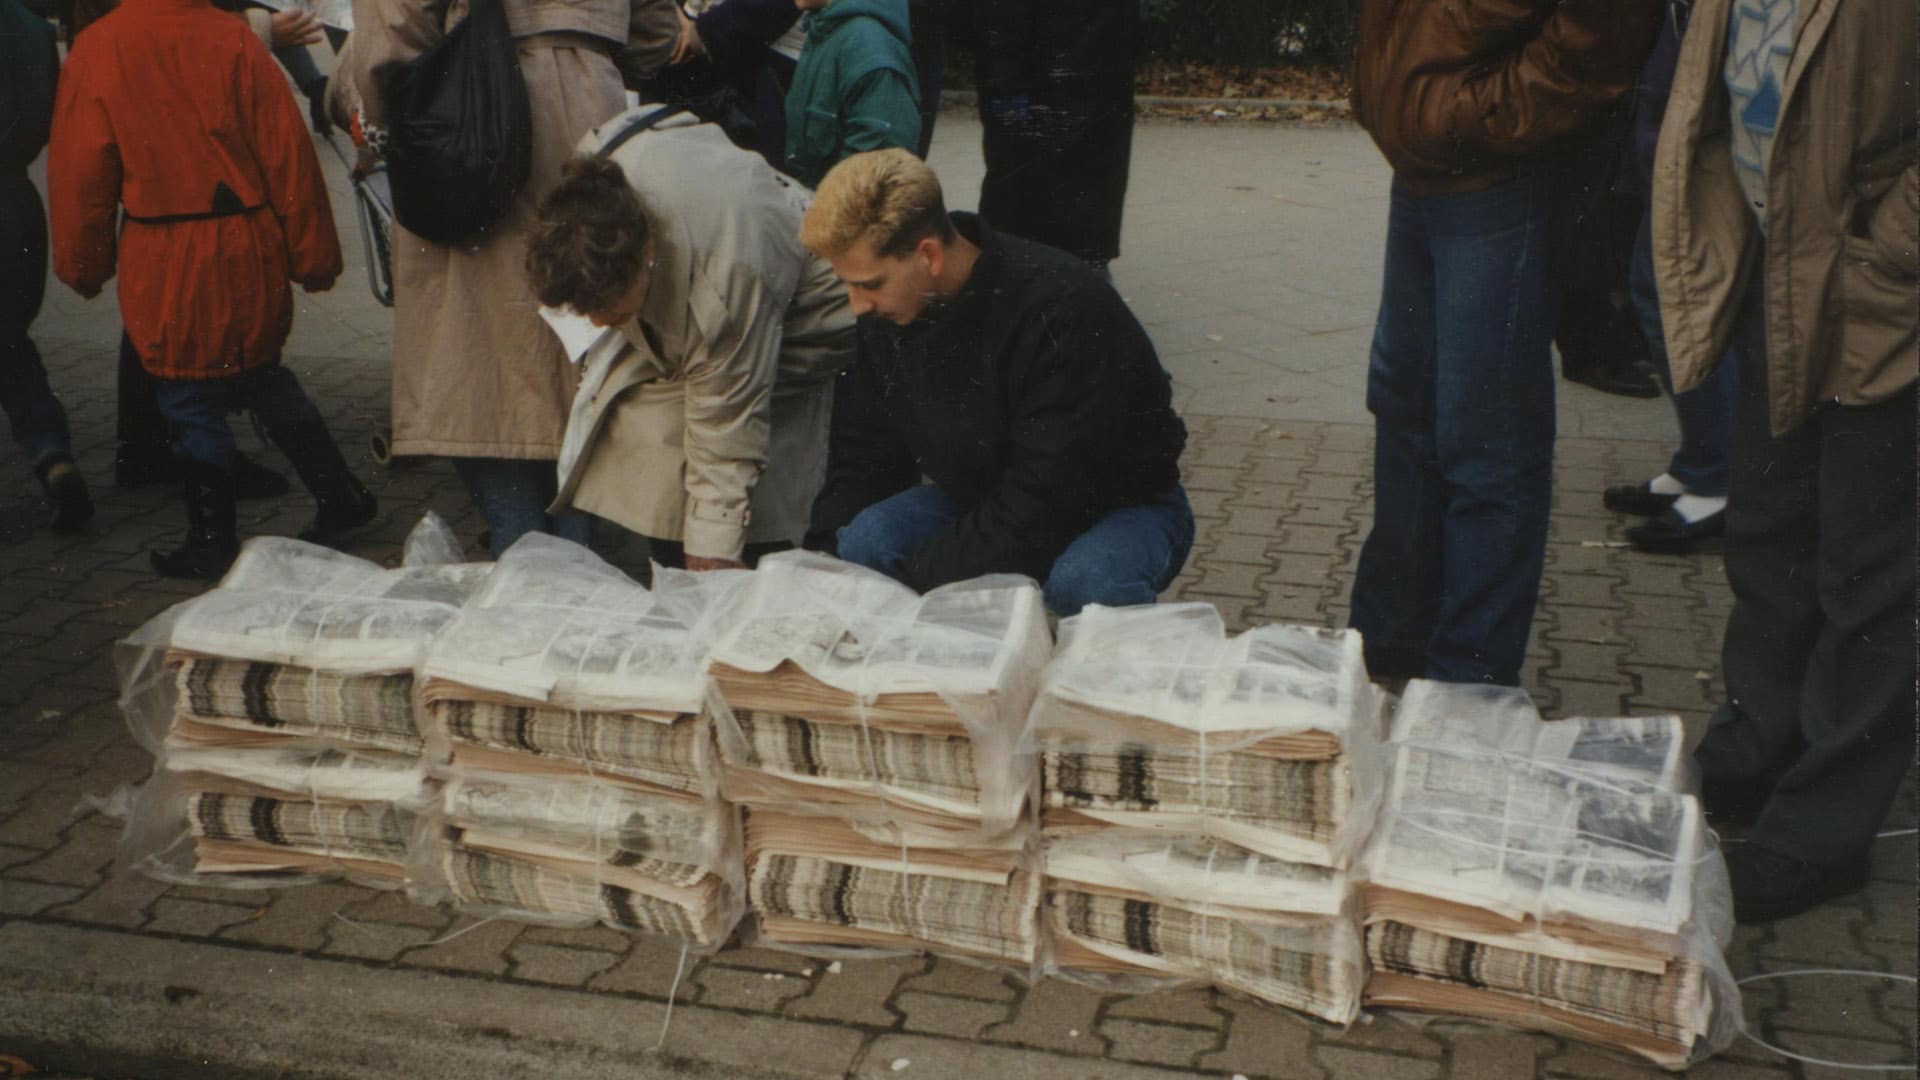 In der Bernauer Straße (Wedding) verteilen Zeitungsverlage am 11. November 1989 kostenlose Sonderausgaben zum Mauerfall